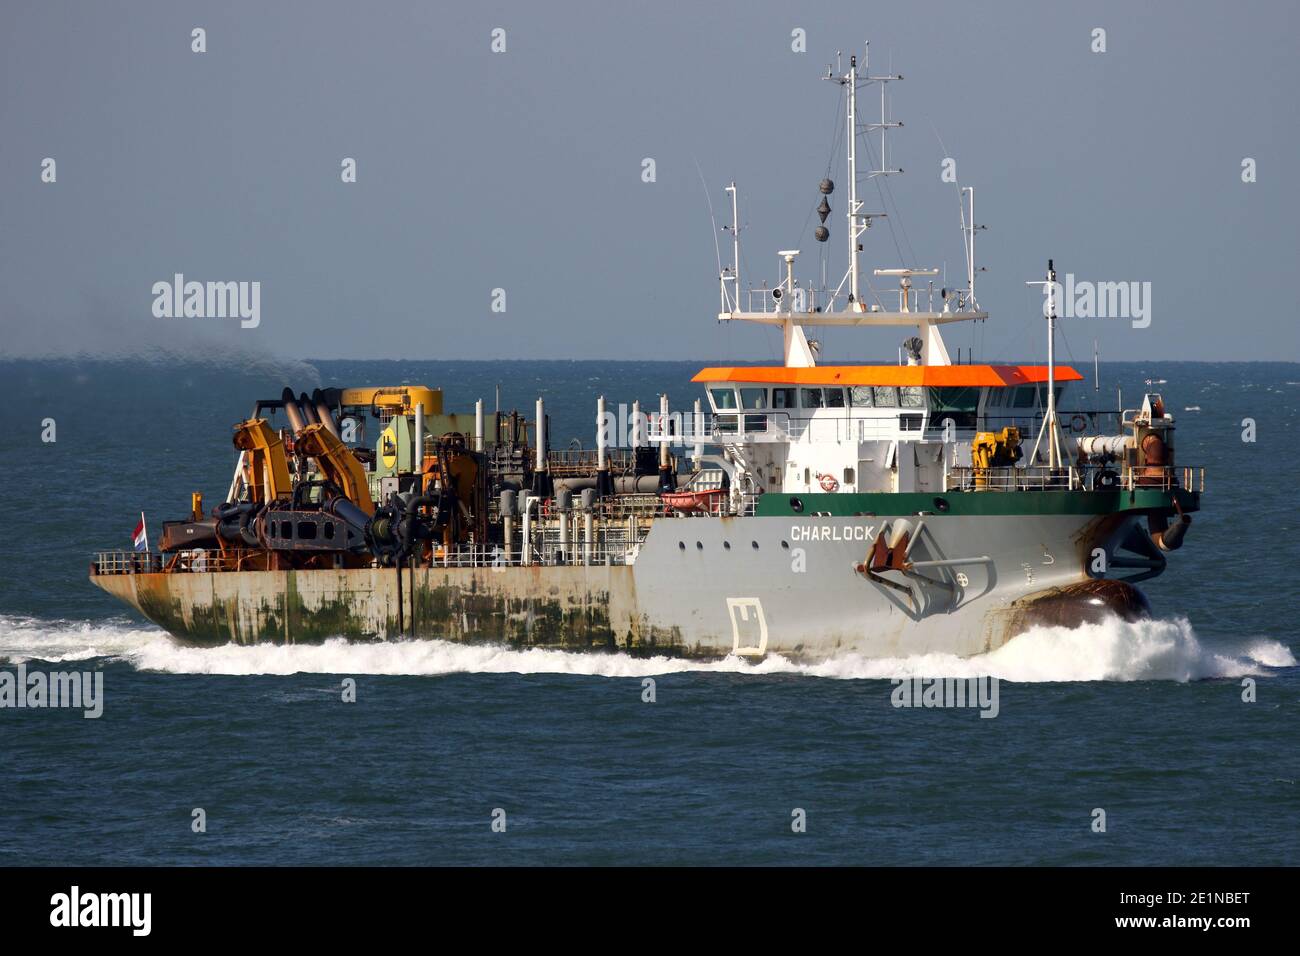 The hopper dredger Charlock will arrive at the port of Rotterdam on September 18, 2020. Stock Photo